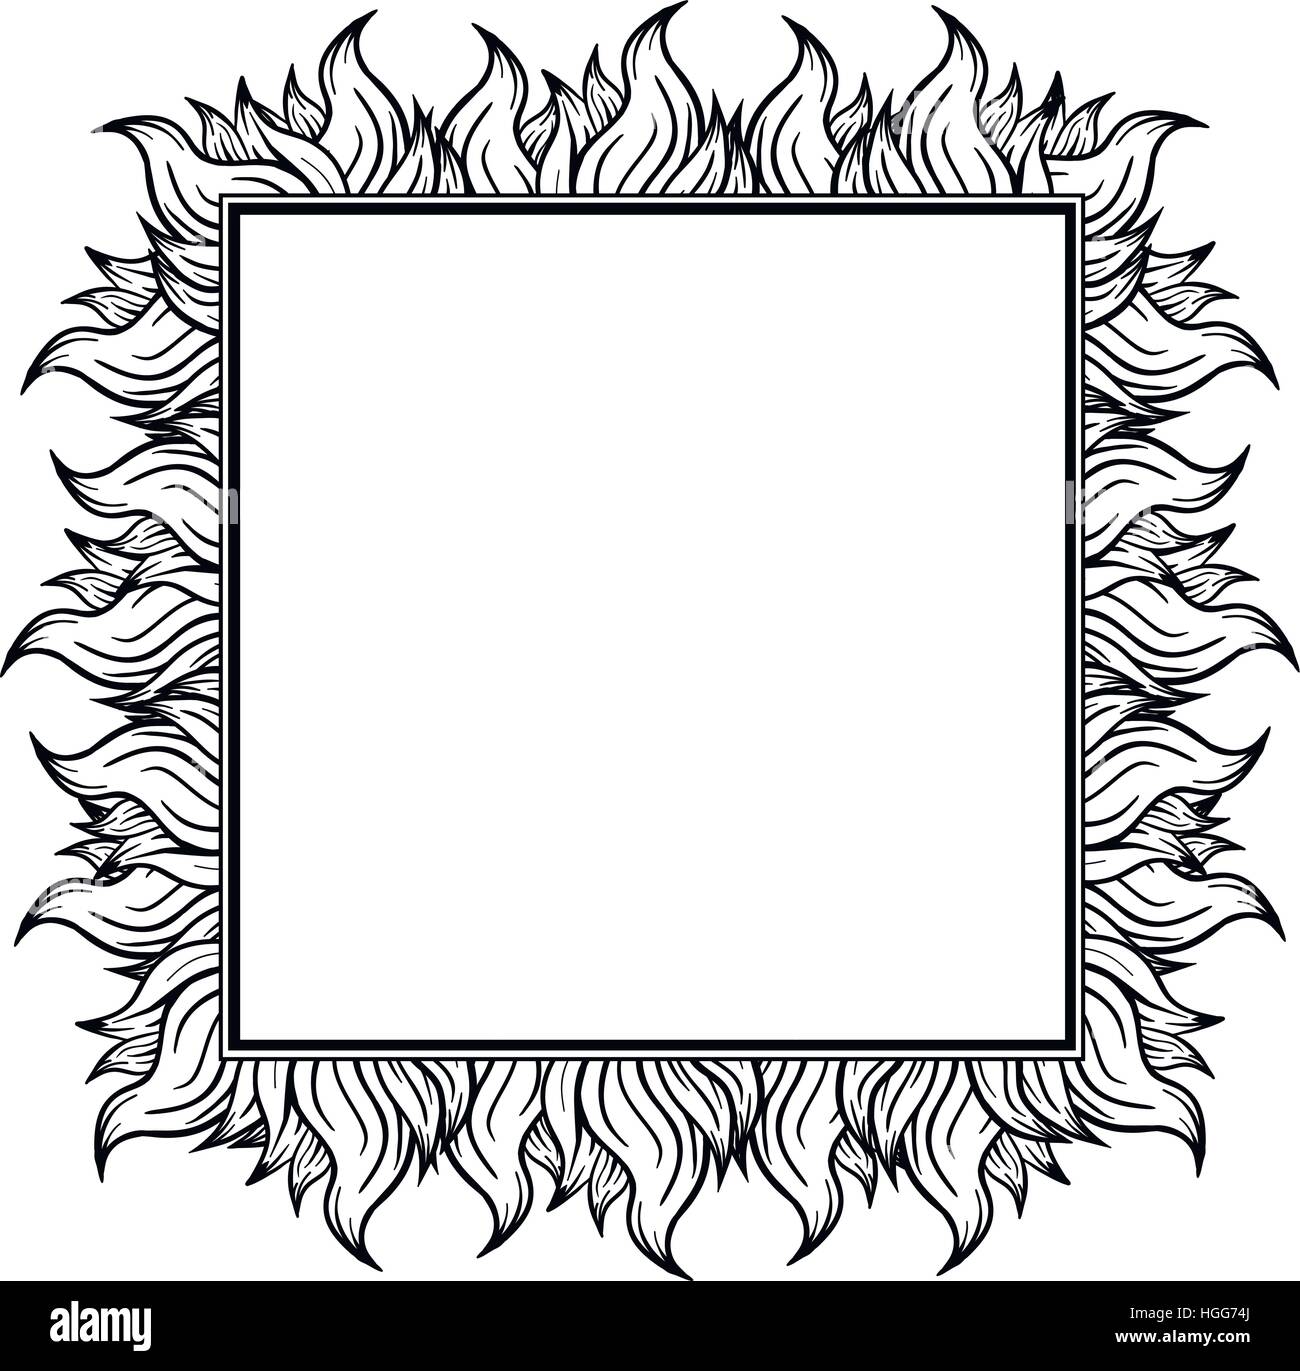 Schwarz weiß kariert Rahmen mit Schüben der Flamme. Vektor-Illustration  Stock-Vektorgrafik - Alamy